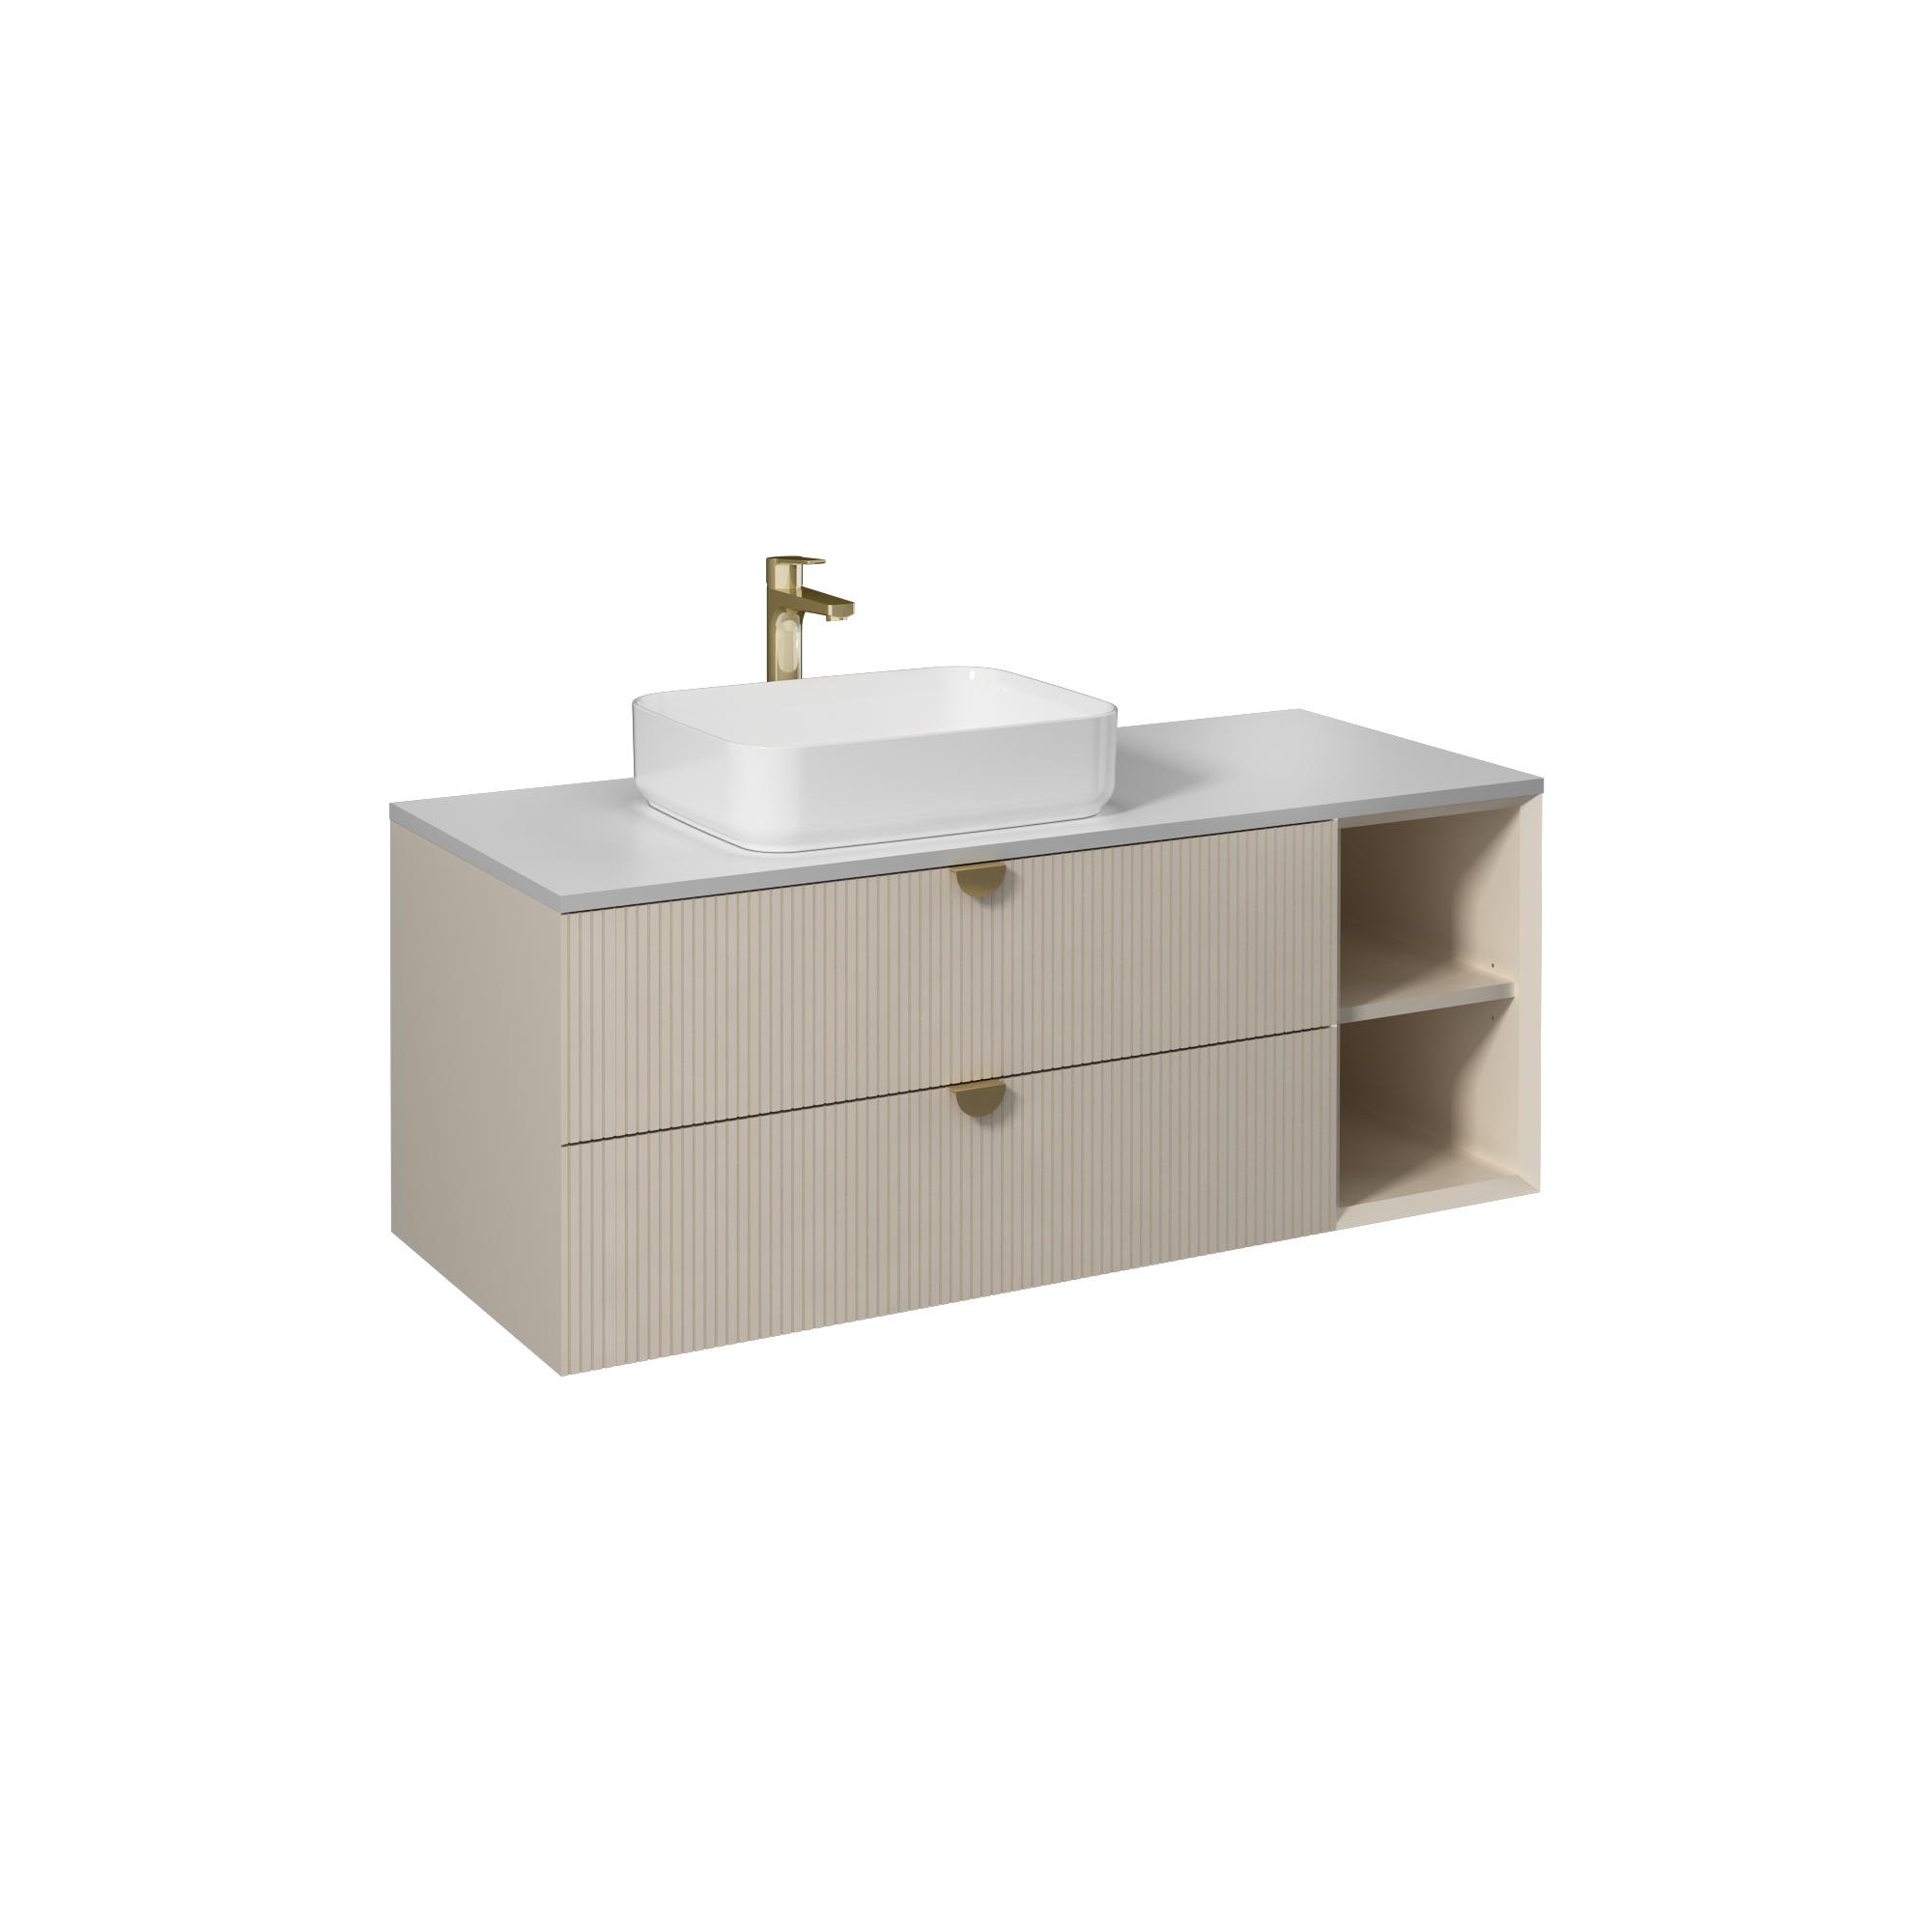 Infinity Washbasin Cabinet, Cream, with White Washbasin 130 cm